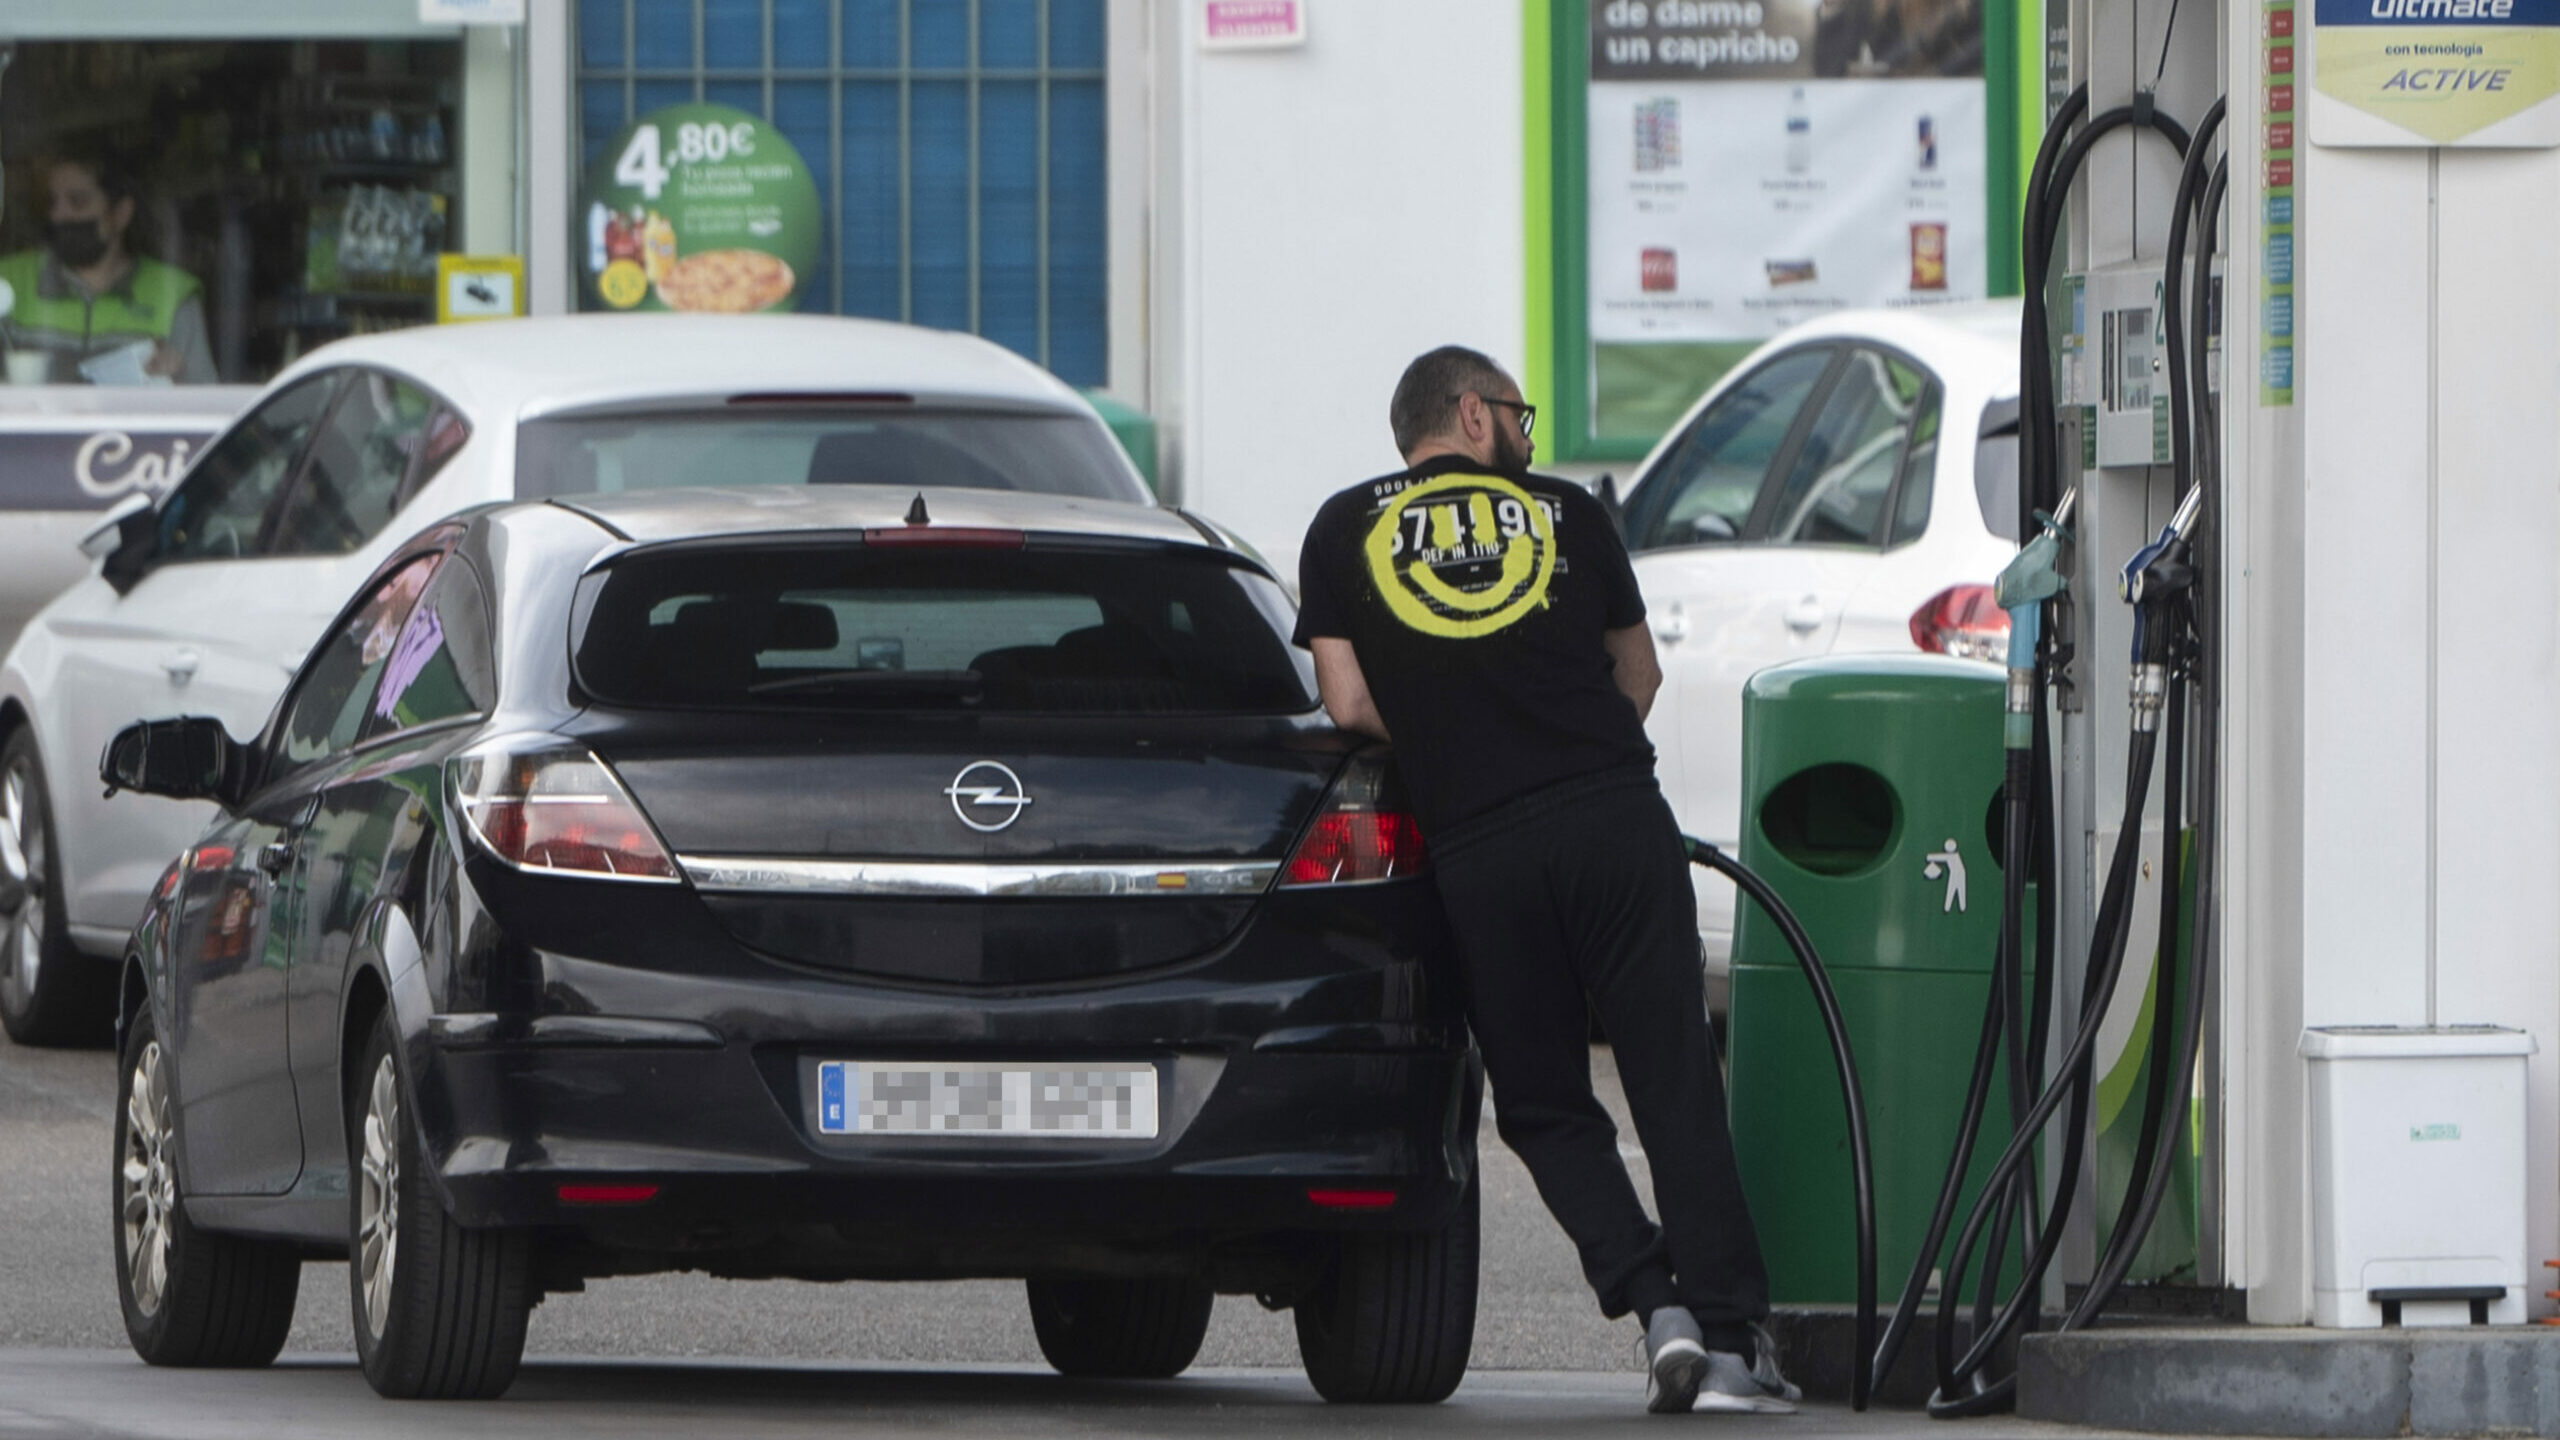 La patronal de gasolineras pide bajar el IVA de carburantes frente al "impuestazo" sugerido por los expertos